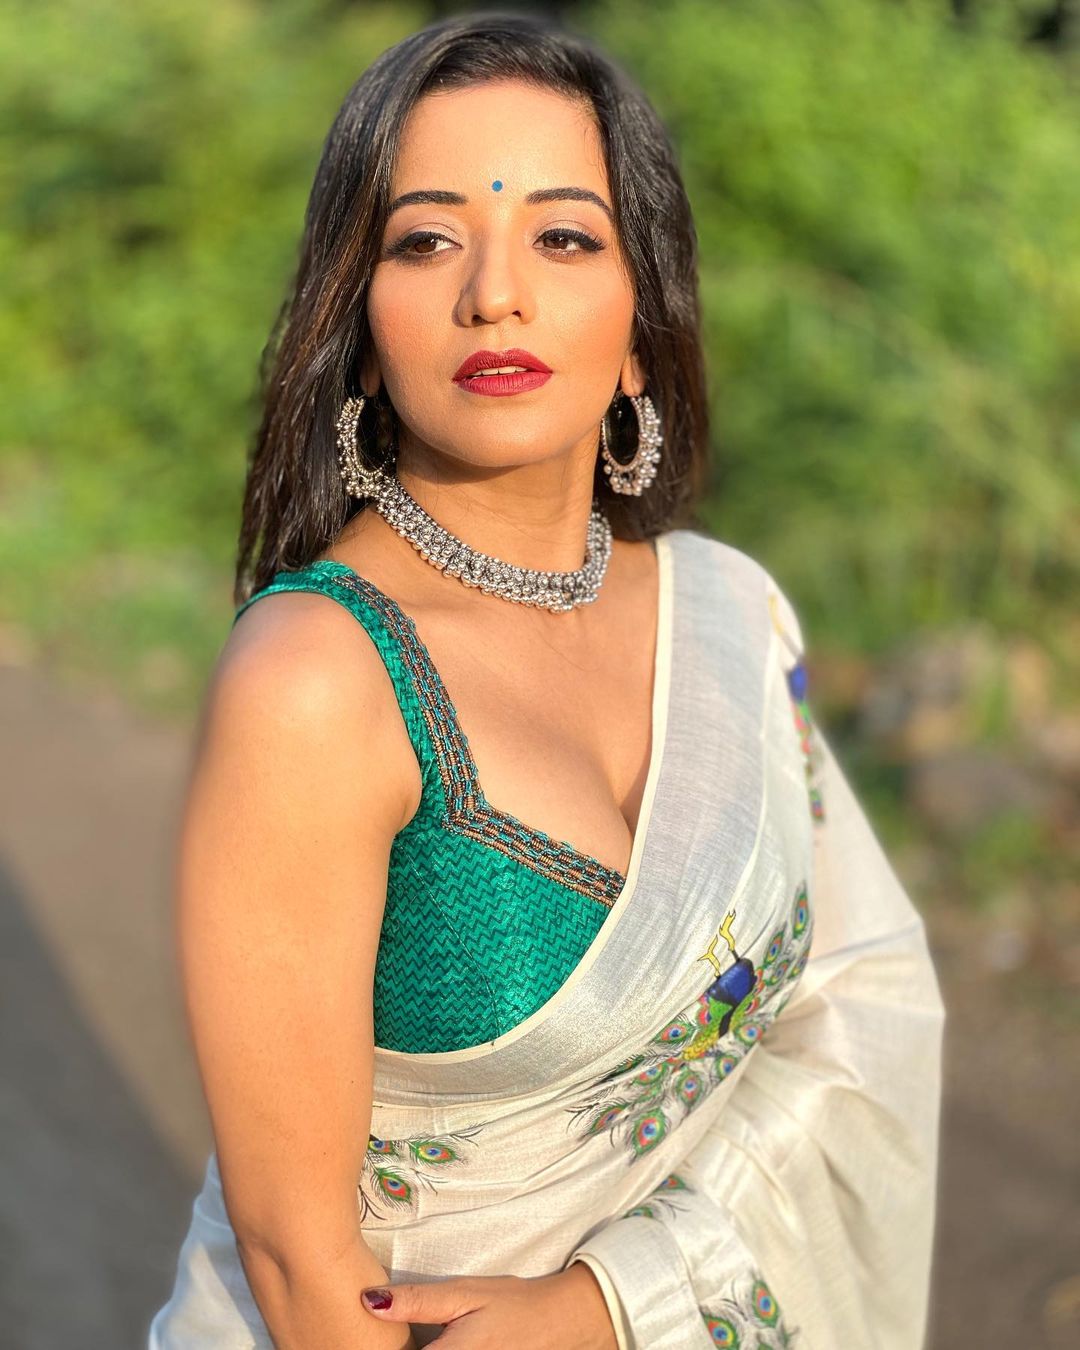 Monalisa Vikrant Banal Ba Beauti Sajal Saman Ho Bhojpuri Romantic Song Video | Bhojpuri Song: मोनालिसा ने अपने इस अलग अवतार से मचाया धमाल, लोगों को खूब पसंद आ रहा गाना